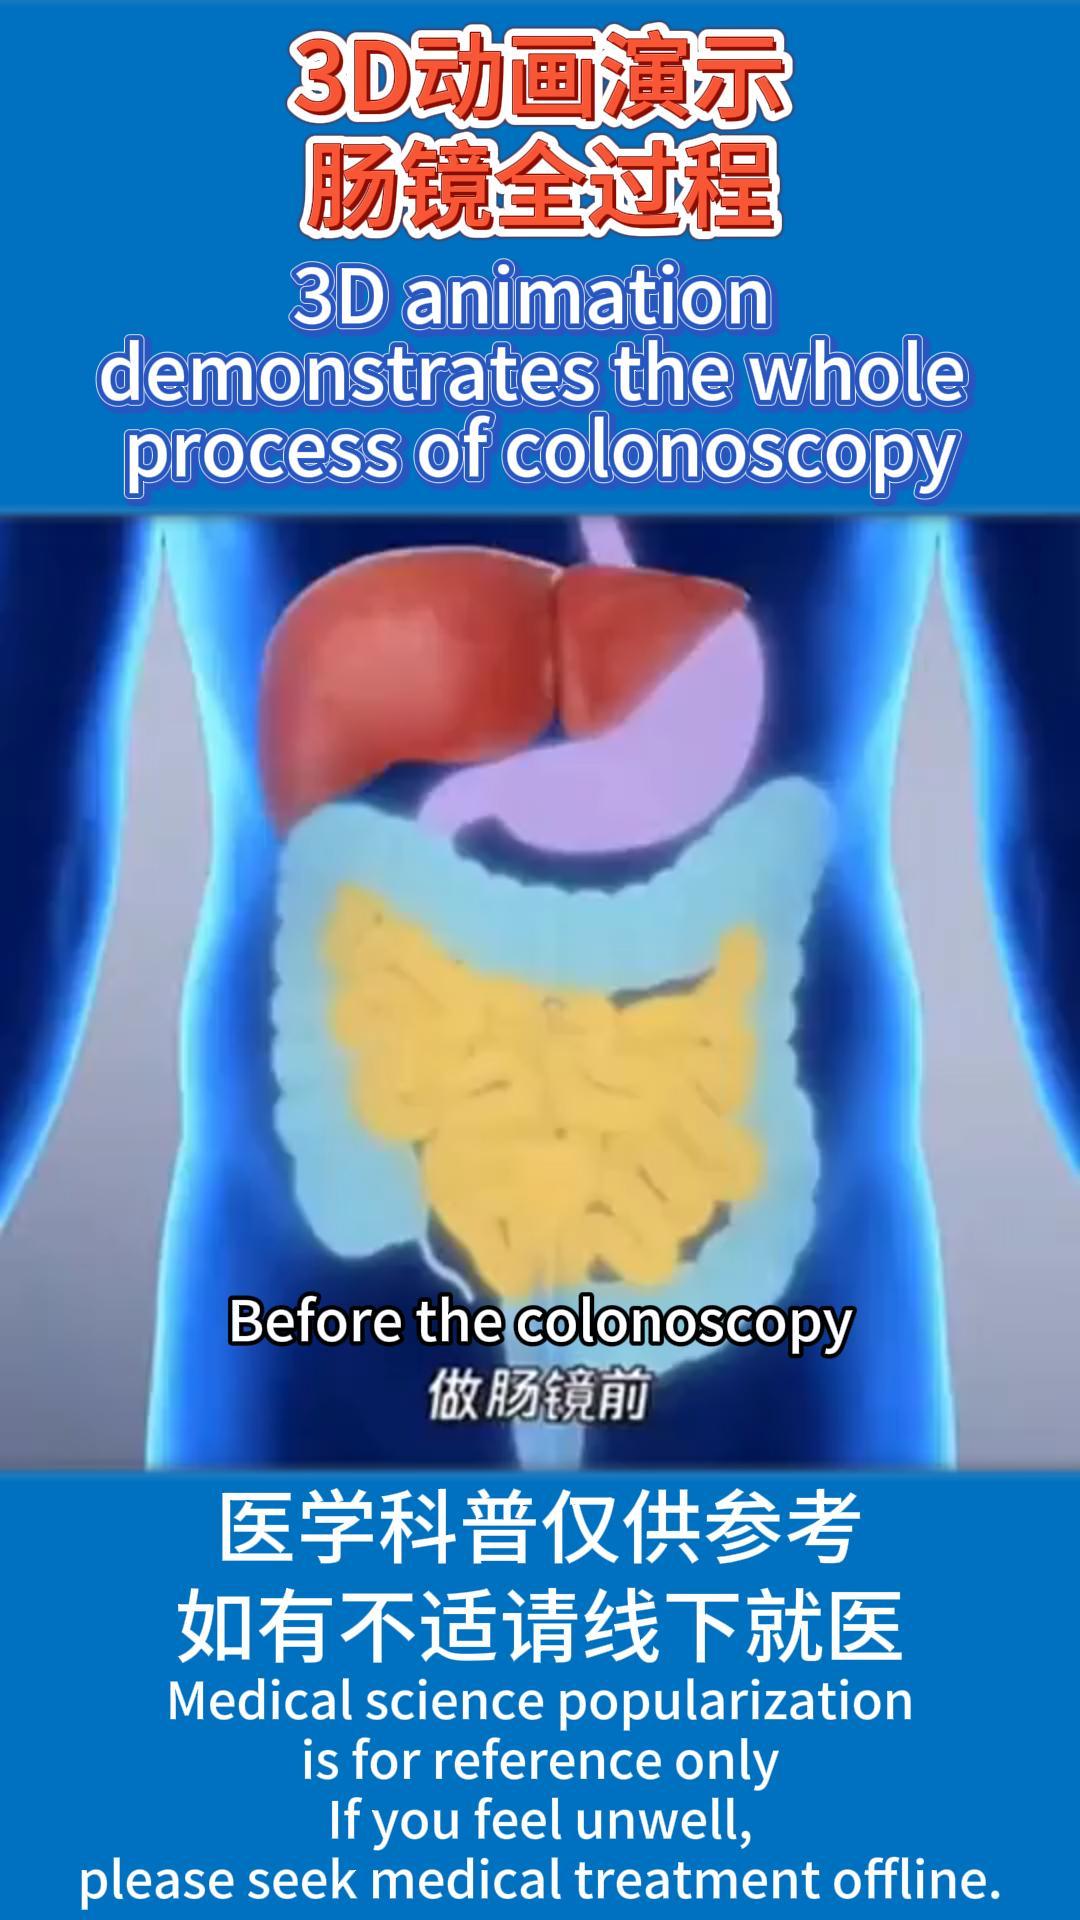 Թույլ տվեք ձեզ ցույց տալ կոլոնոսկոպիայի ամբողջ գործընթացը